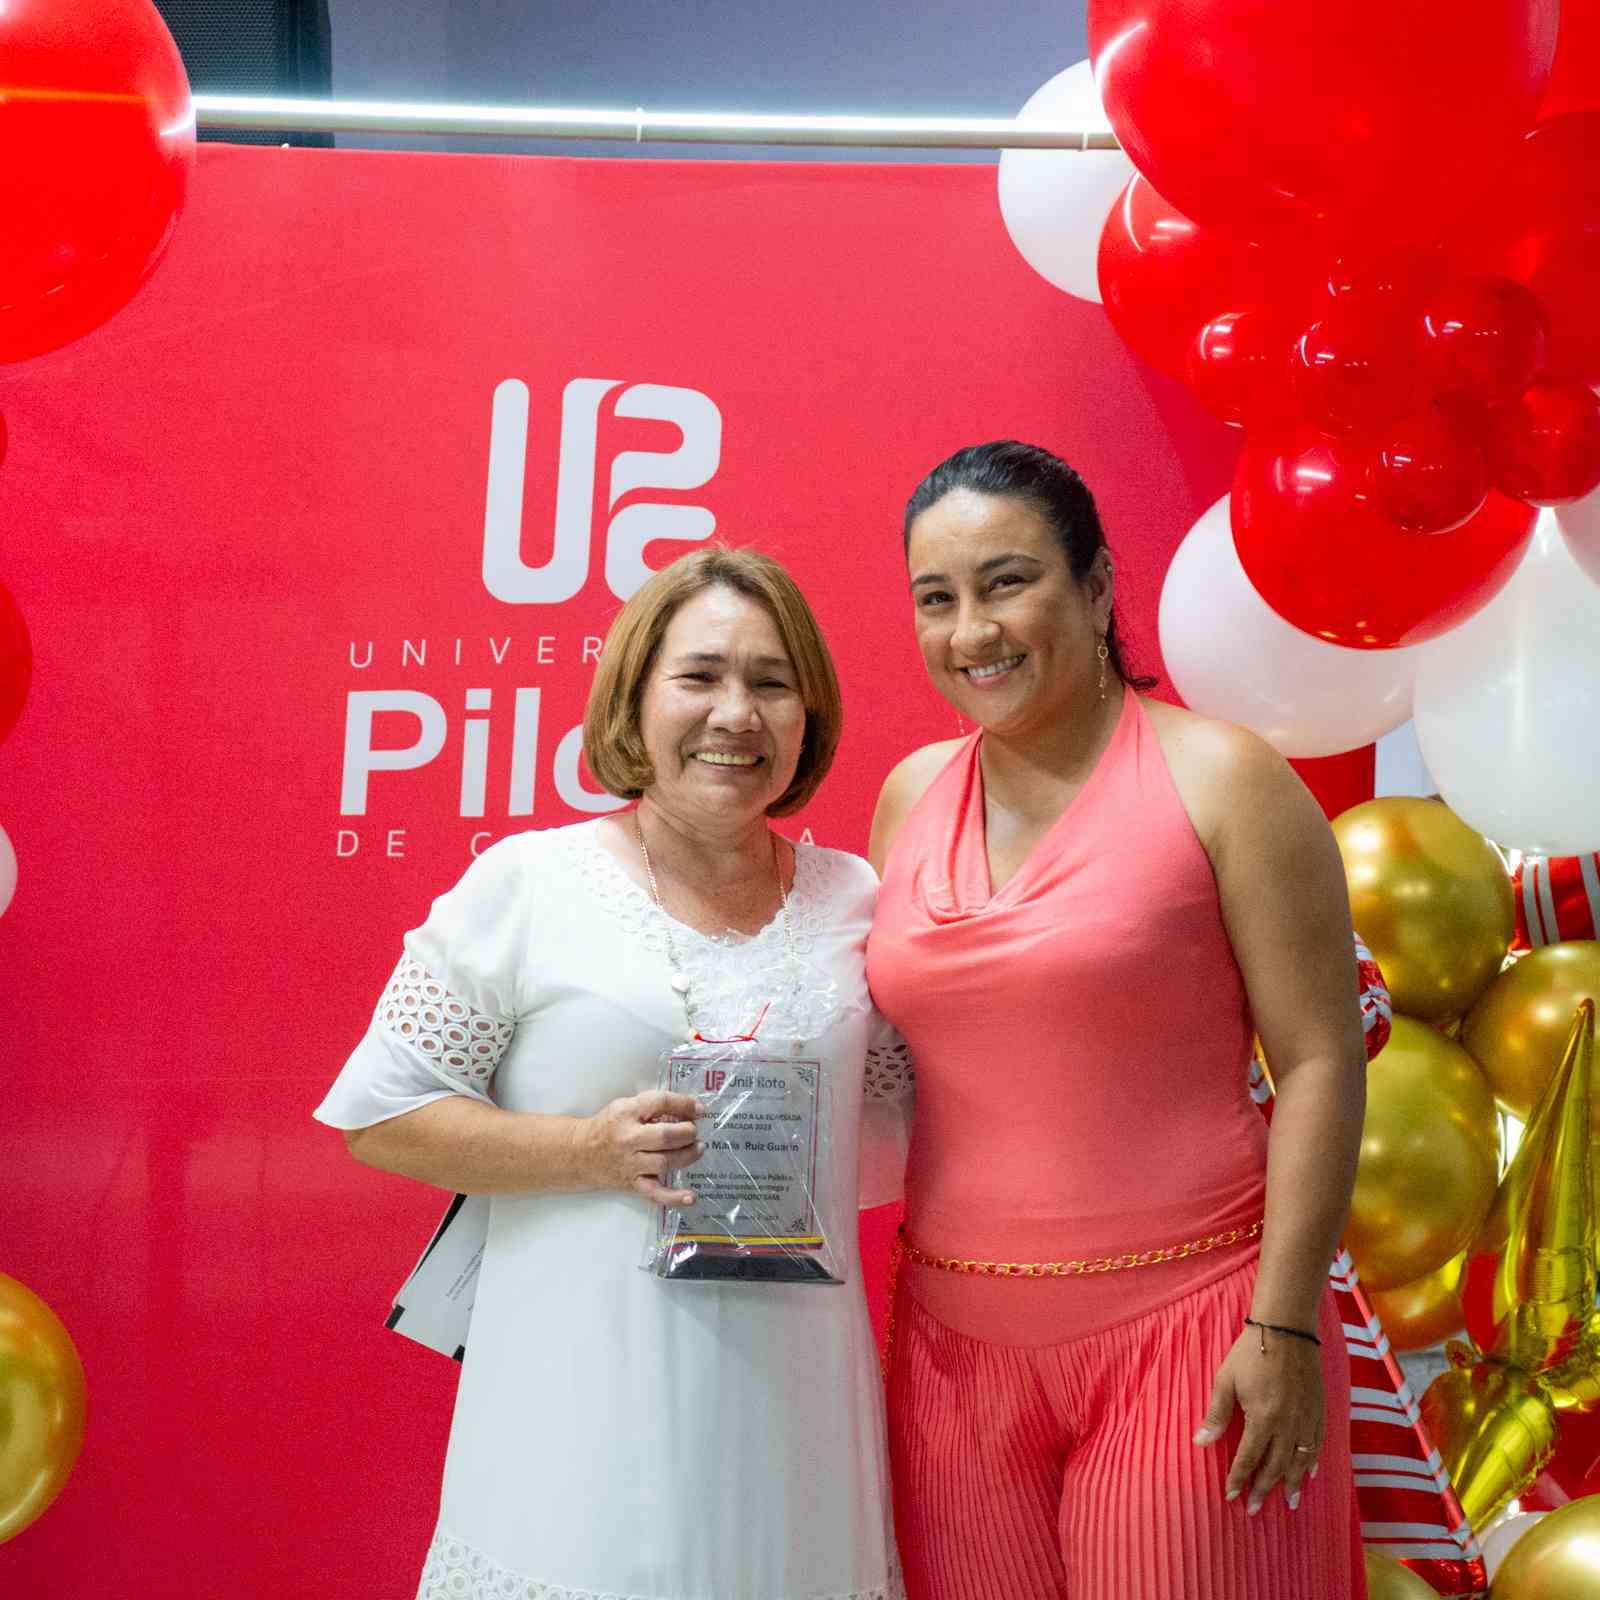 Una foto que muestra a Diana María Ruiz(izquierda) y a Nataly Beltrán Barco (derecha). Posando sonrientes exhibiendo el reconocimiento que recibió el egresado Nicolás. Ambas están vestidas de gala, frente a un fondo rojo con el logo de la unipiloto.